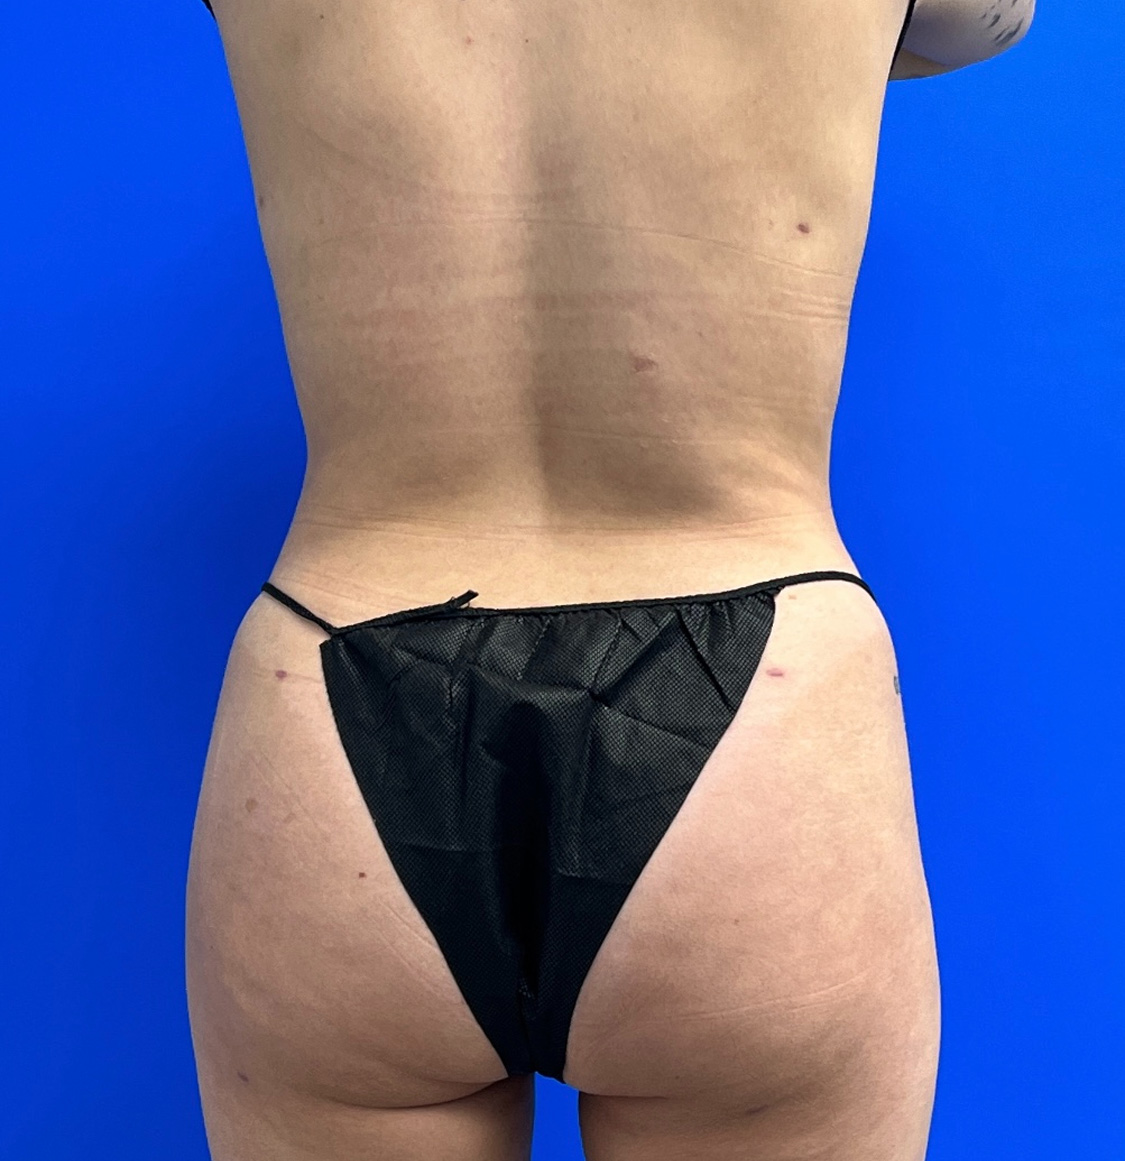 Brazilian Butt Lift Before & After